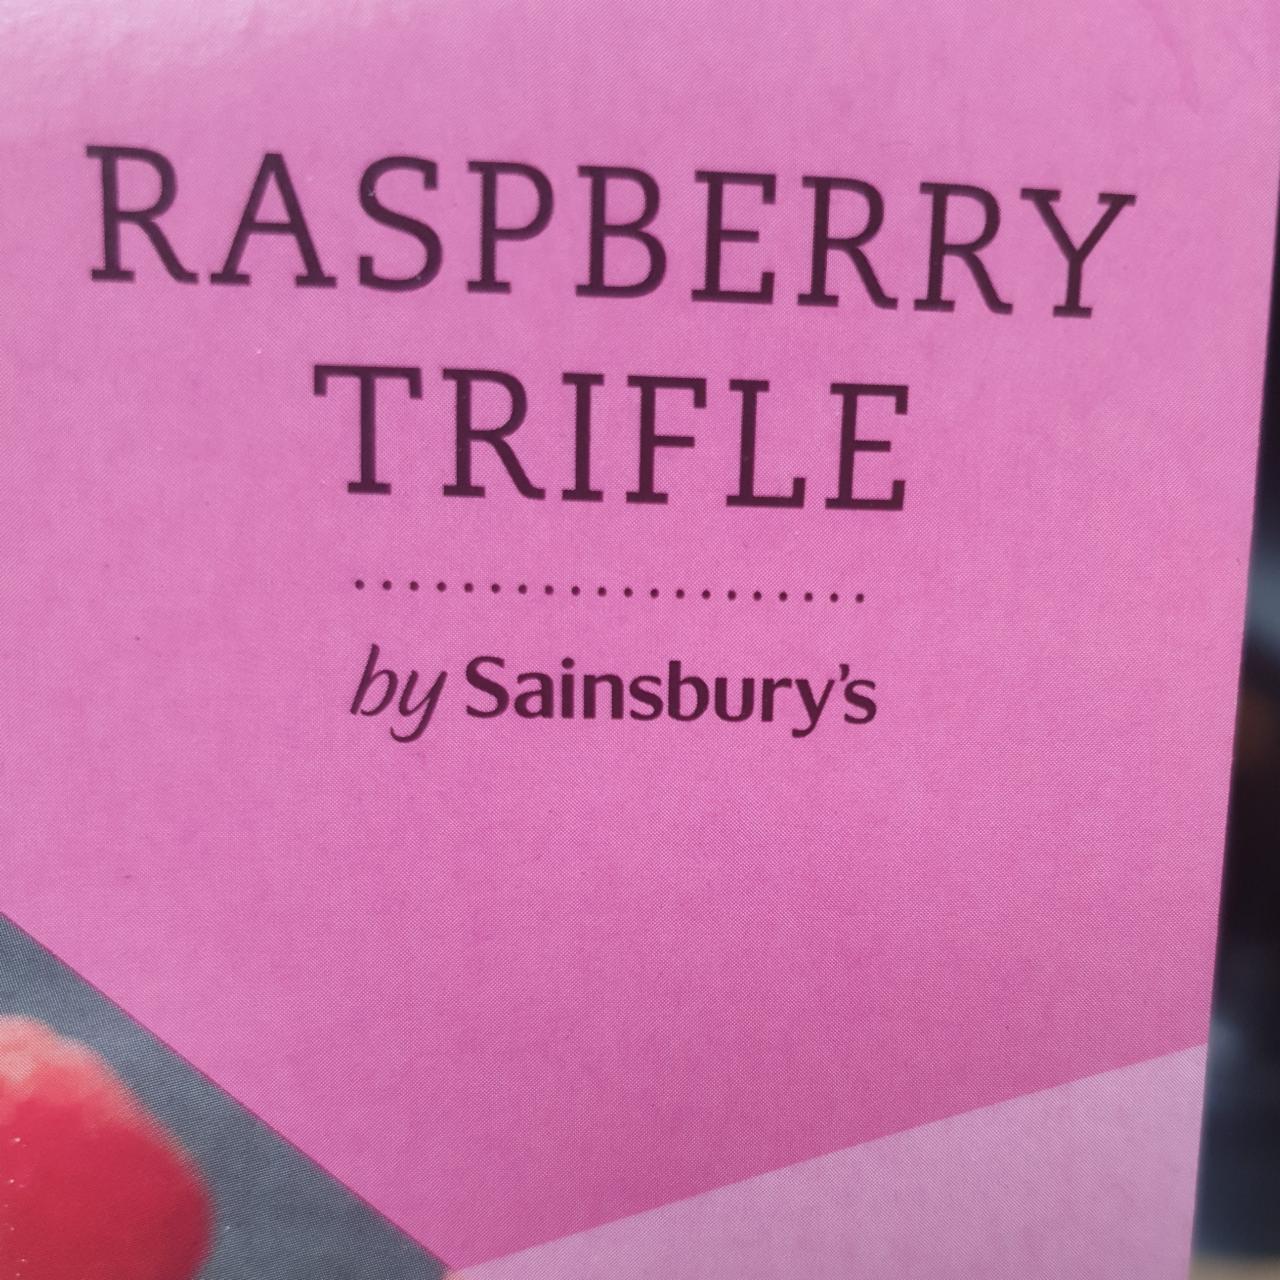 Fotografie - Raspberry trifle by Sainsbury's